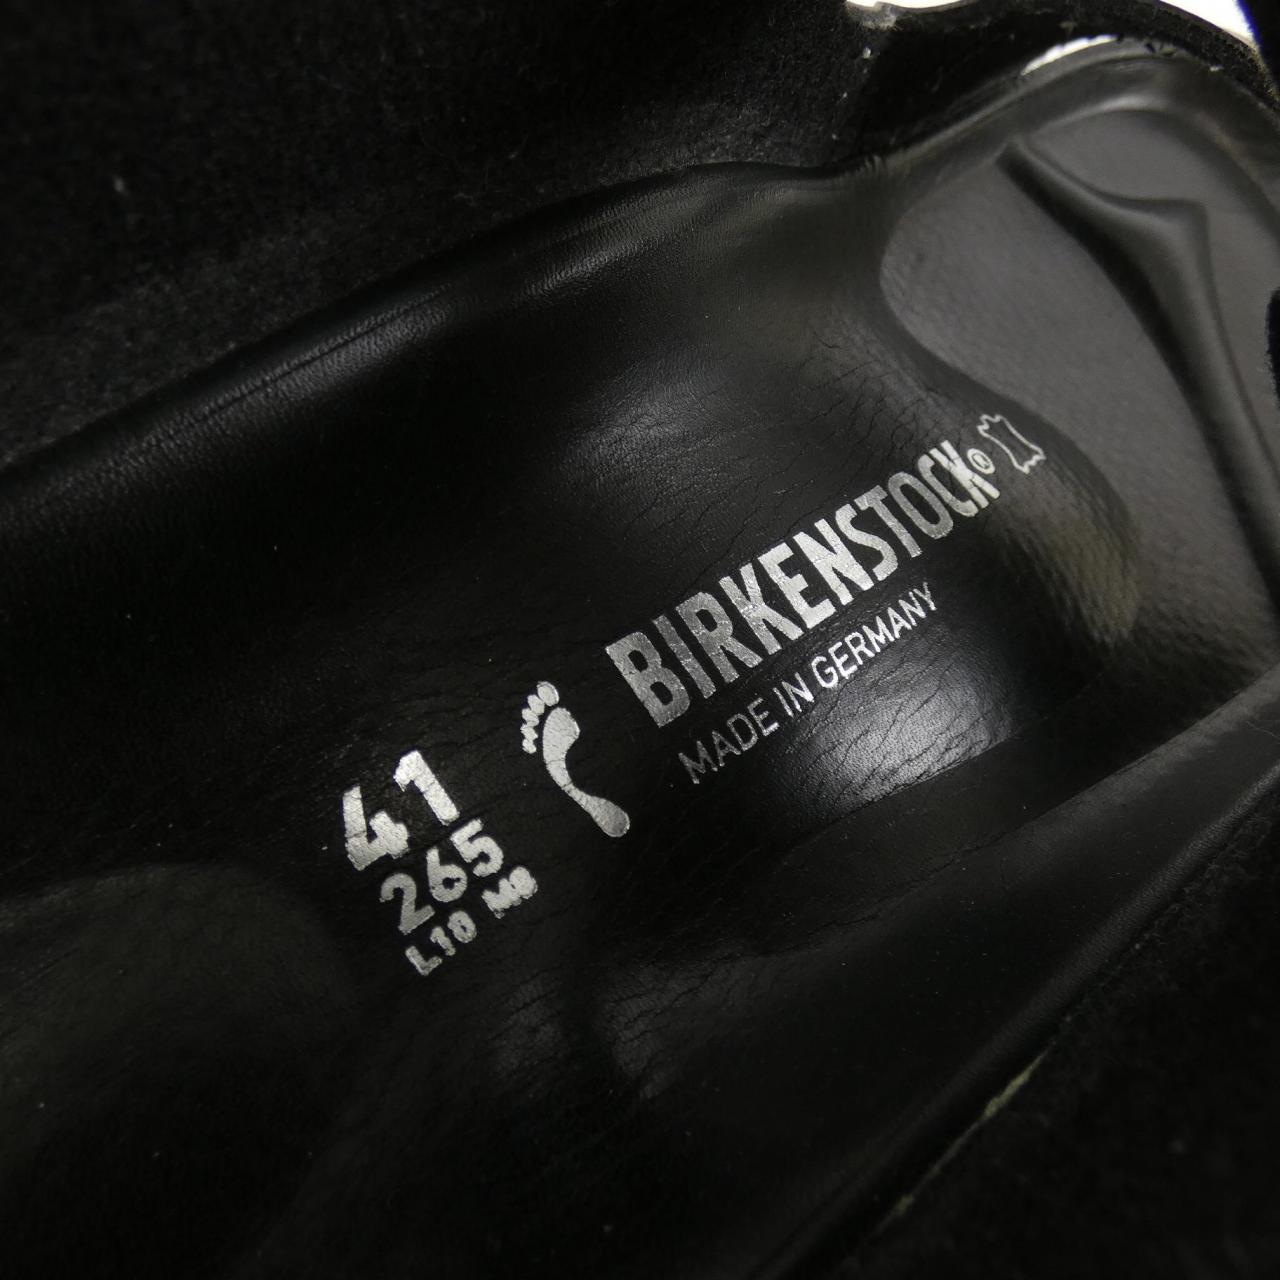 Birkenstock BIRKENSTOCK sandals